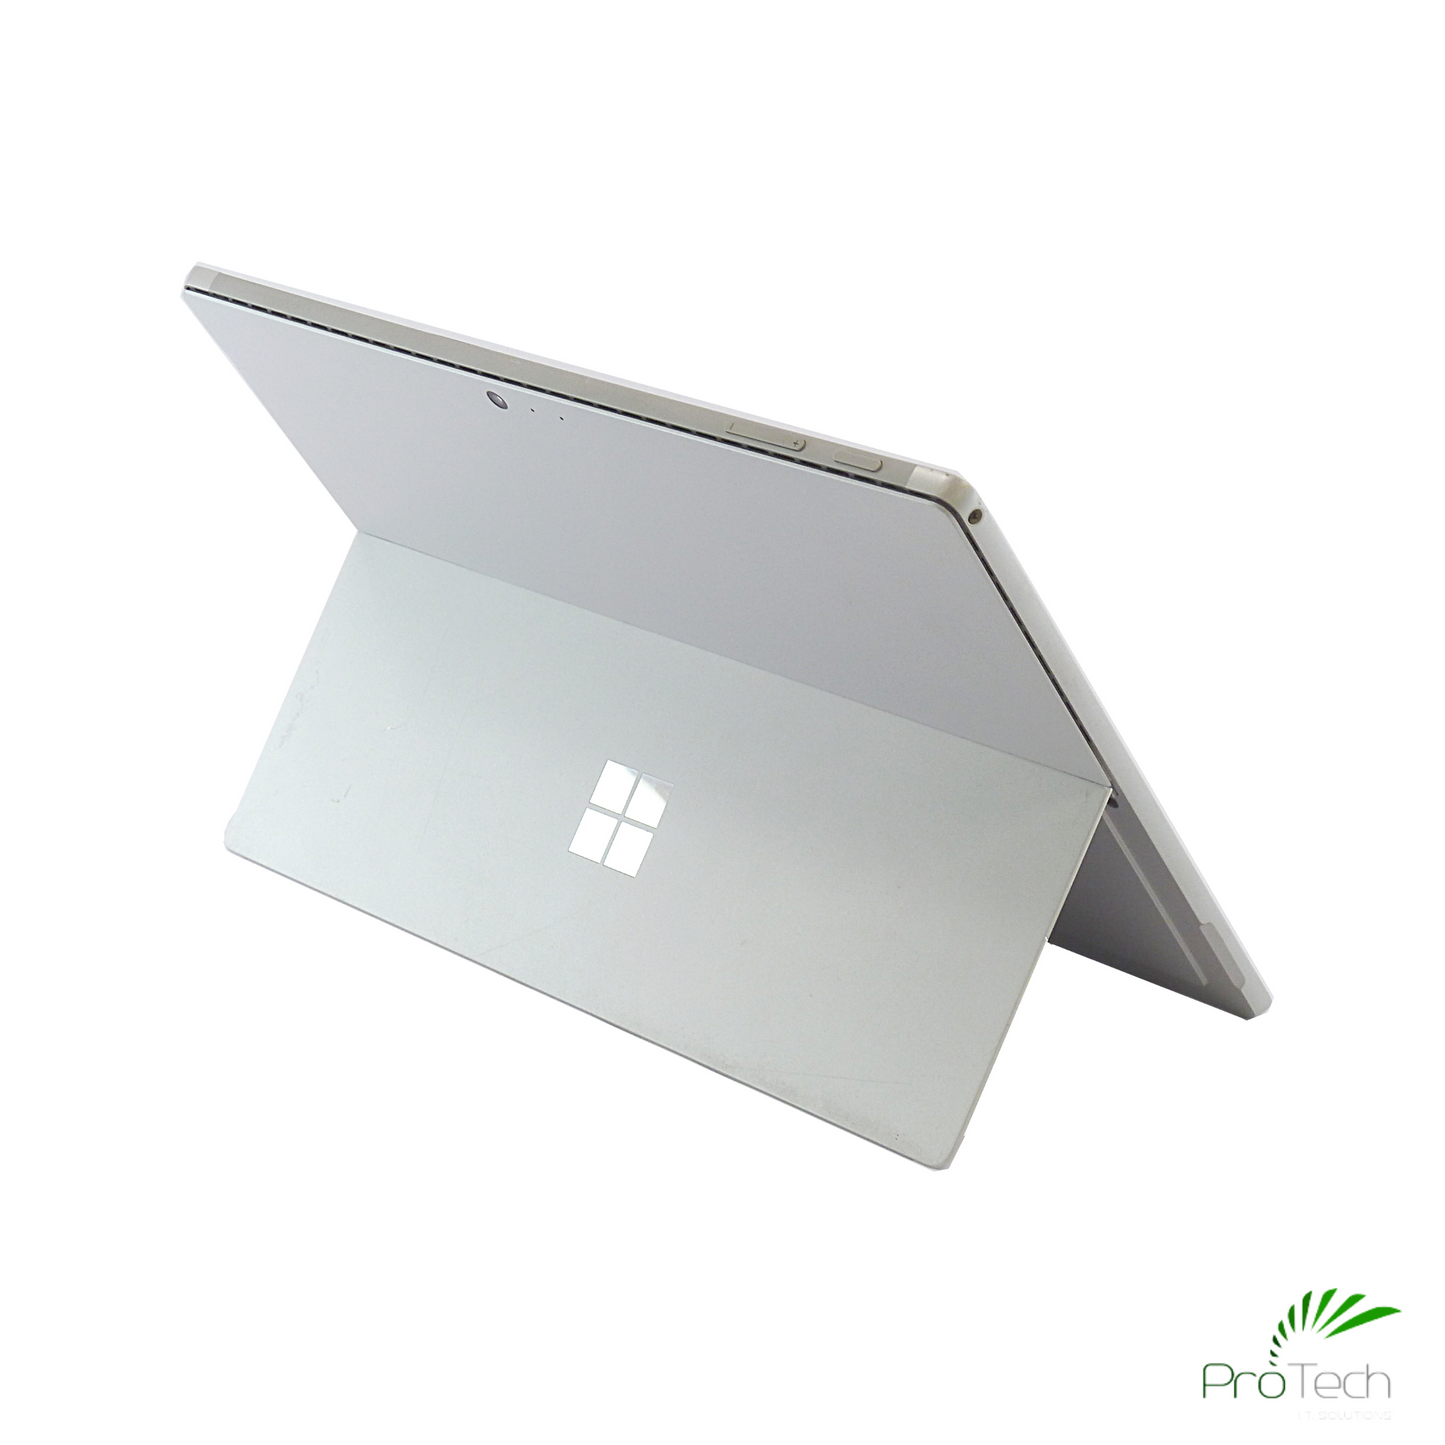 Microsoft Surface Pro 5 | Core i5 | 8GB RAM | 128GB SSD